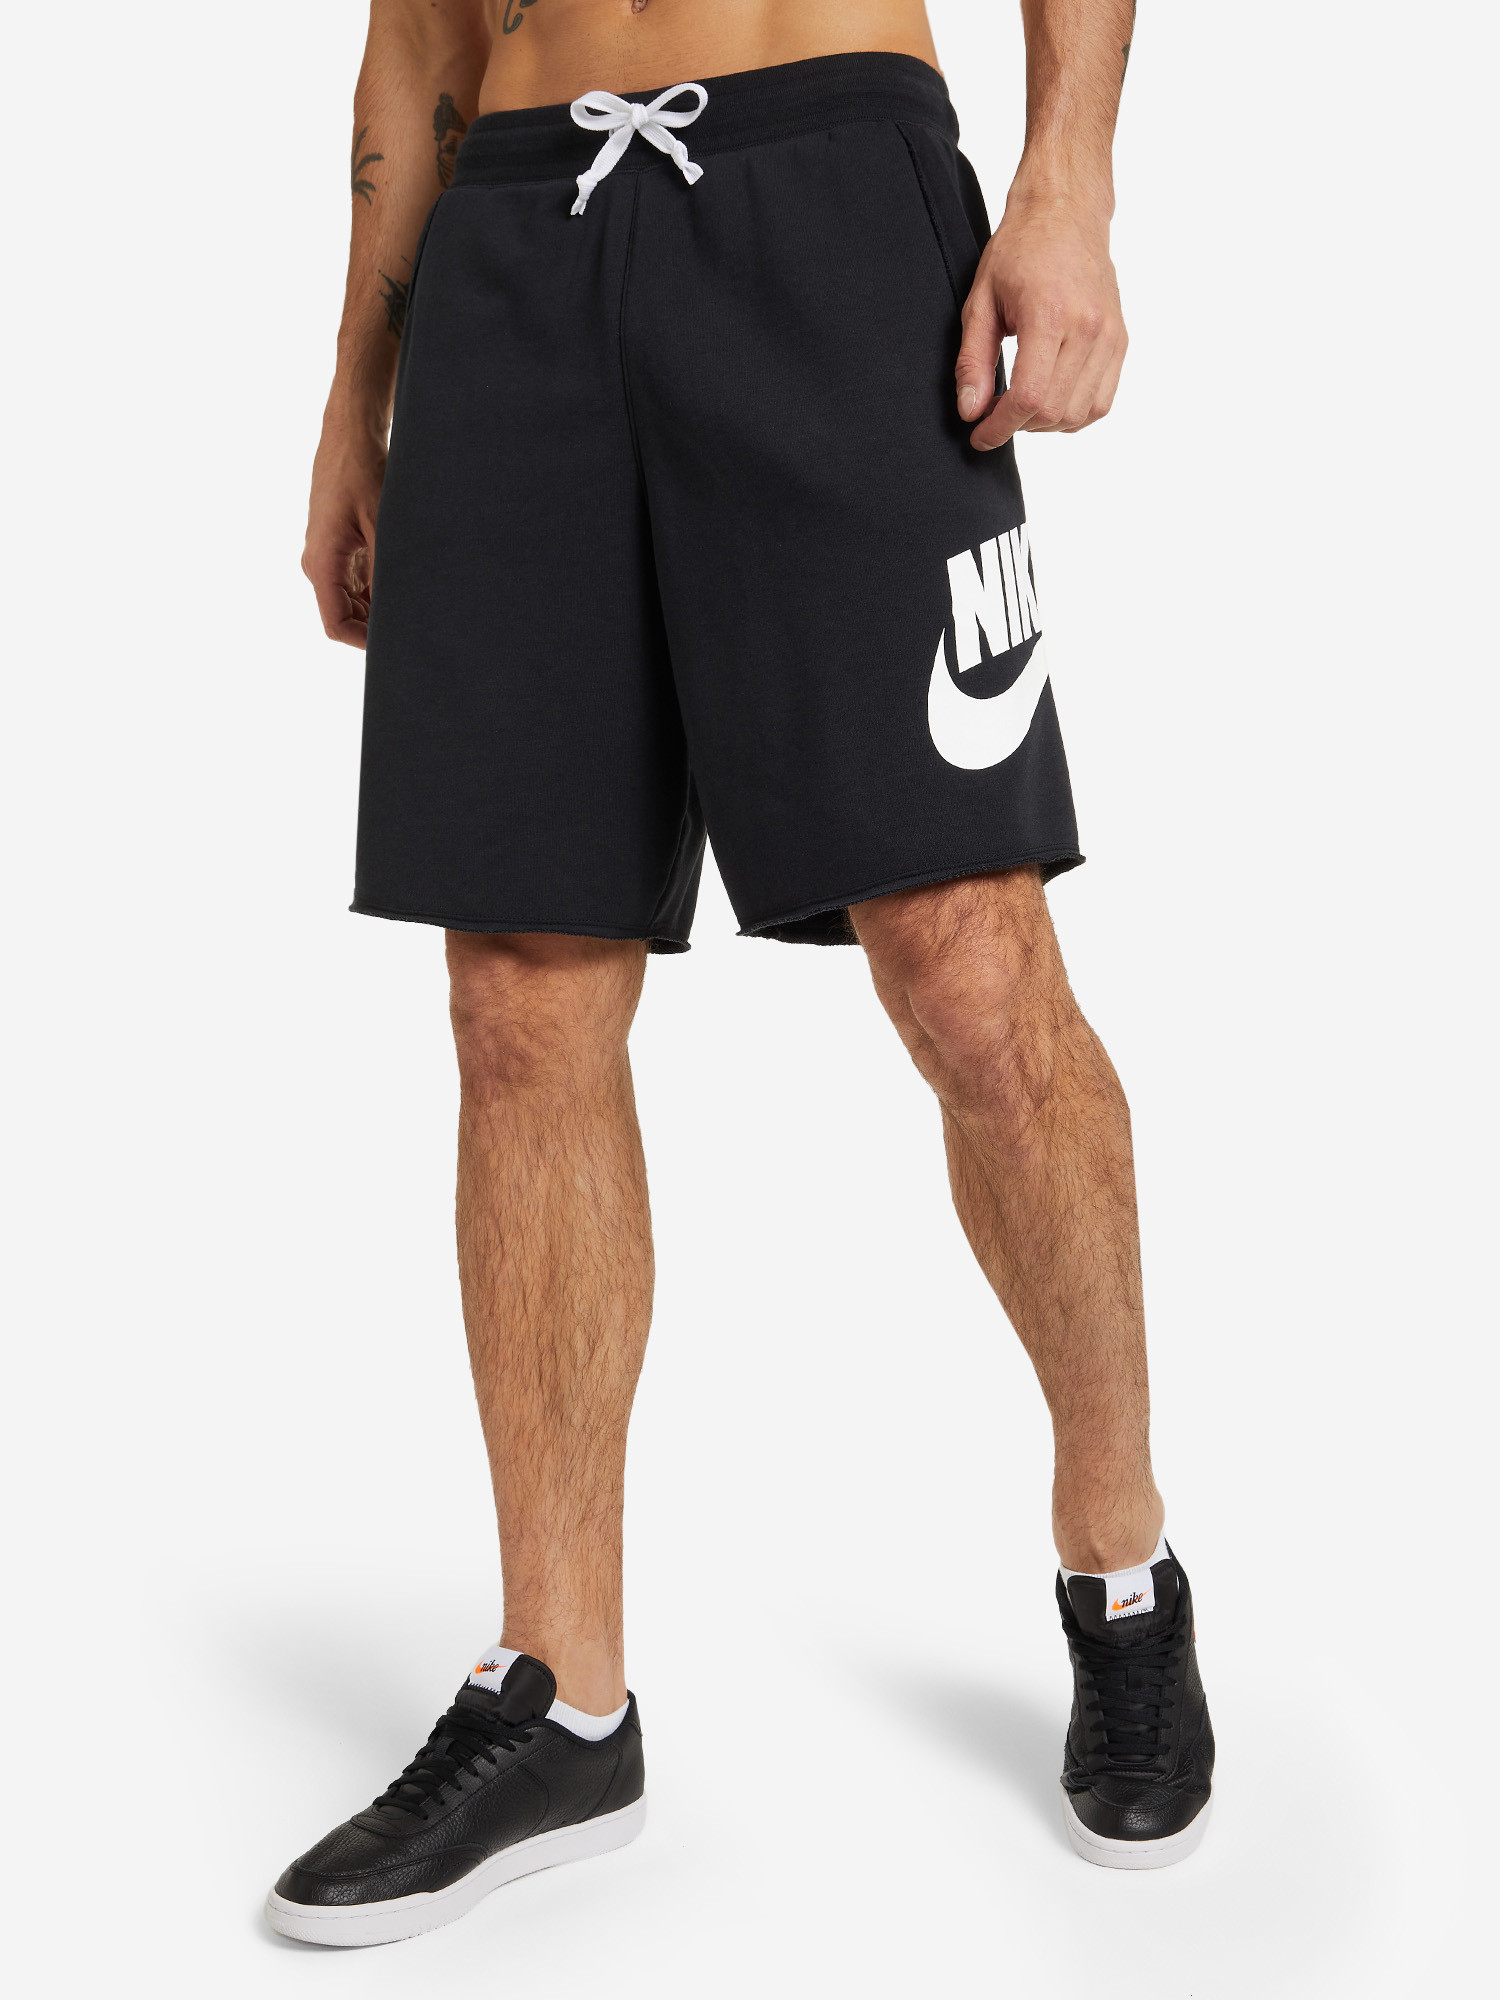 Мужские шорты Nike 269243